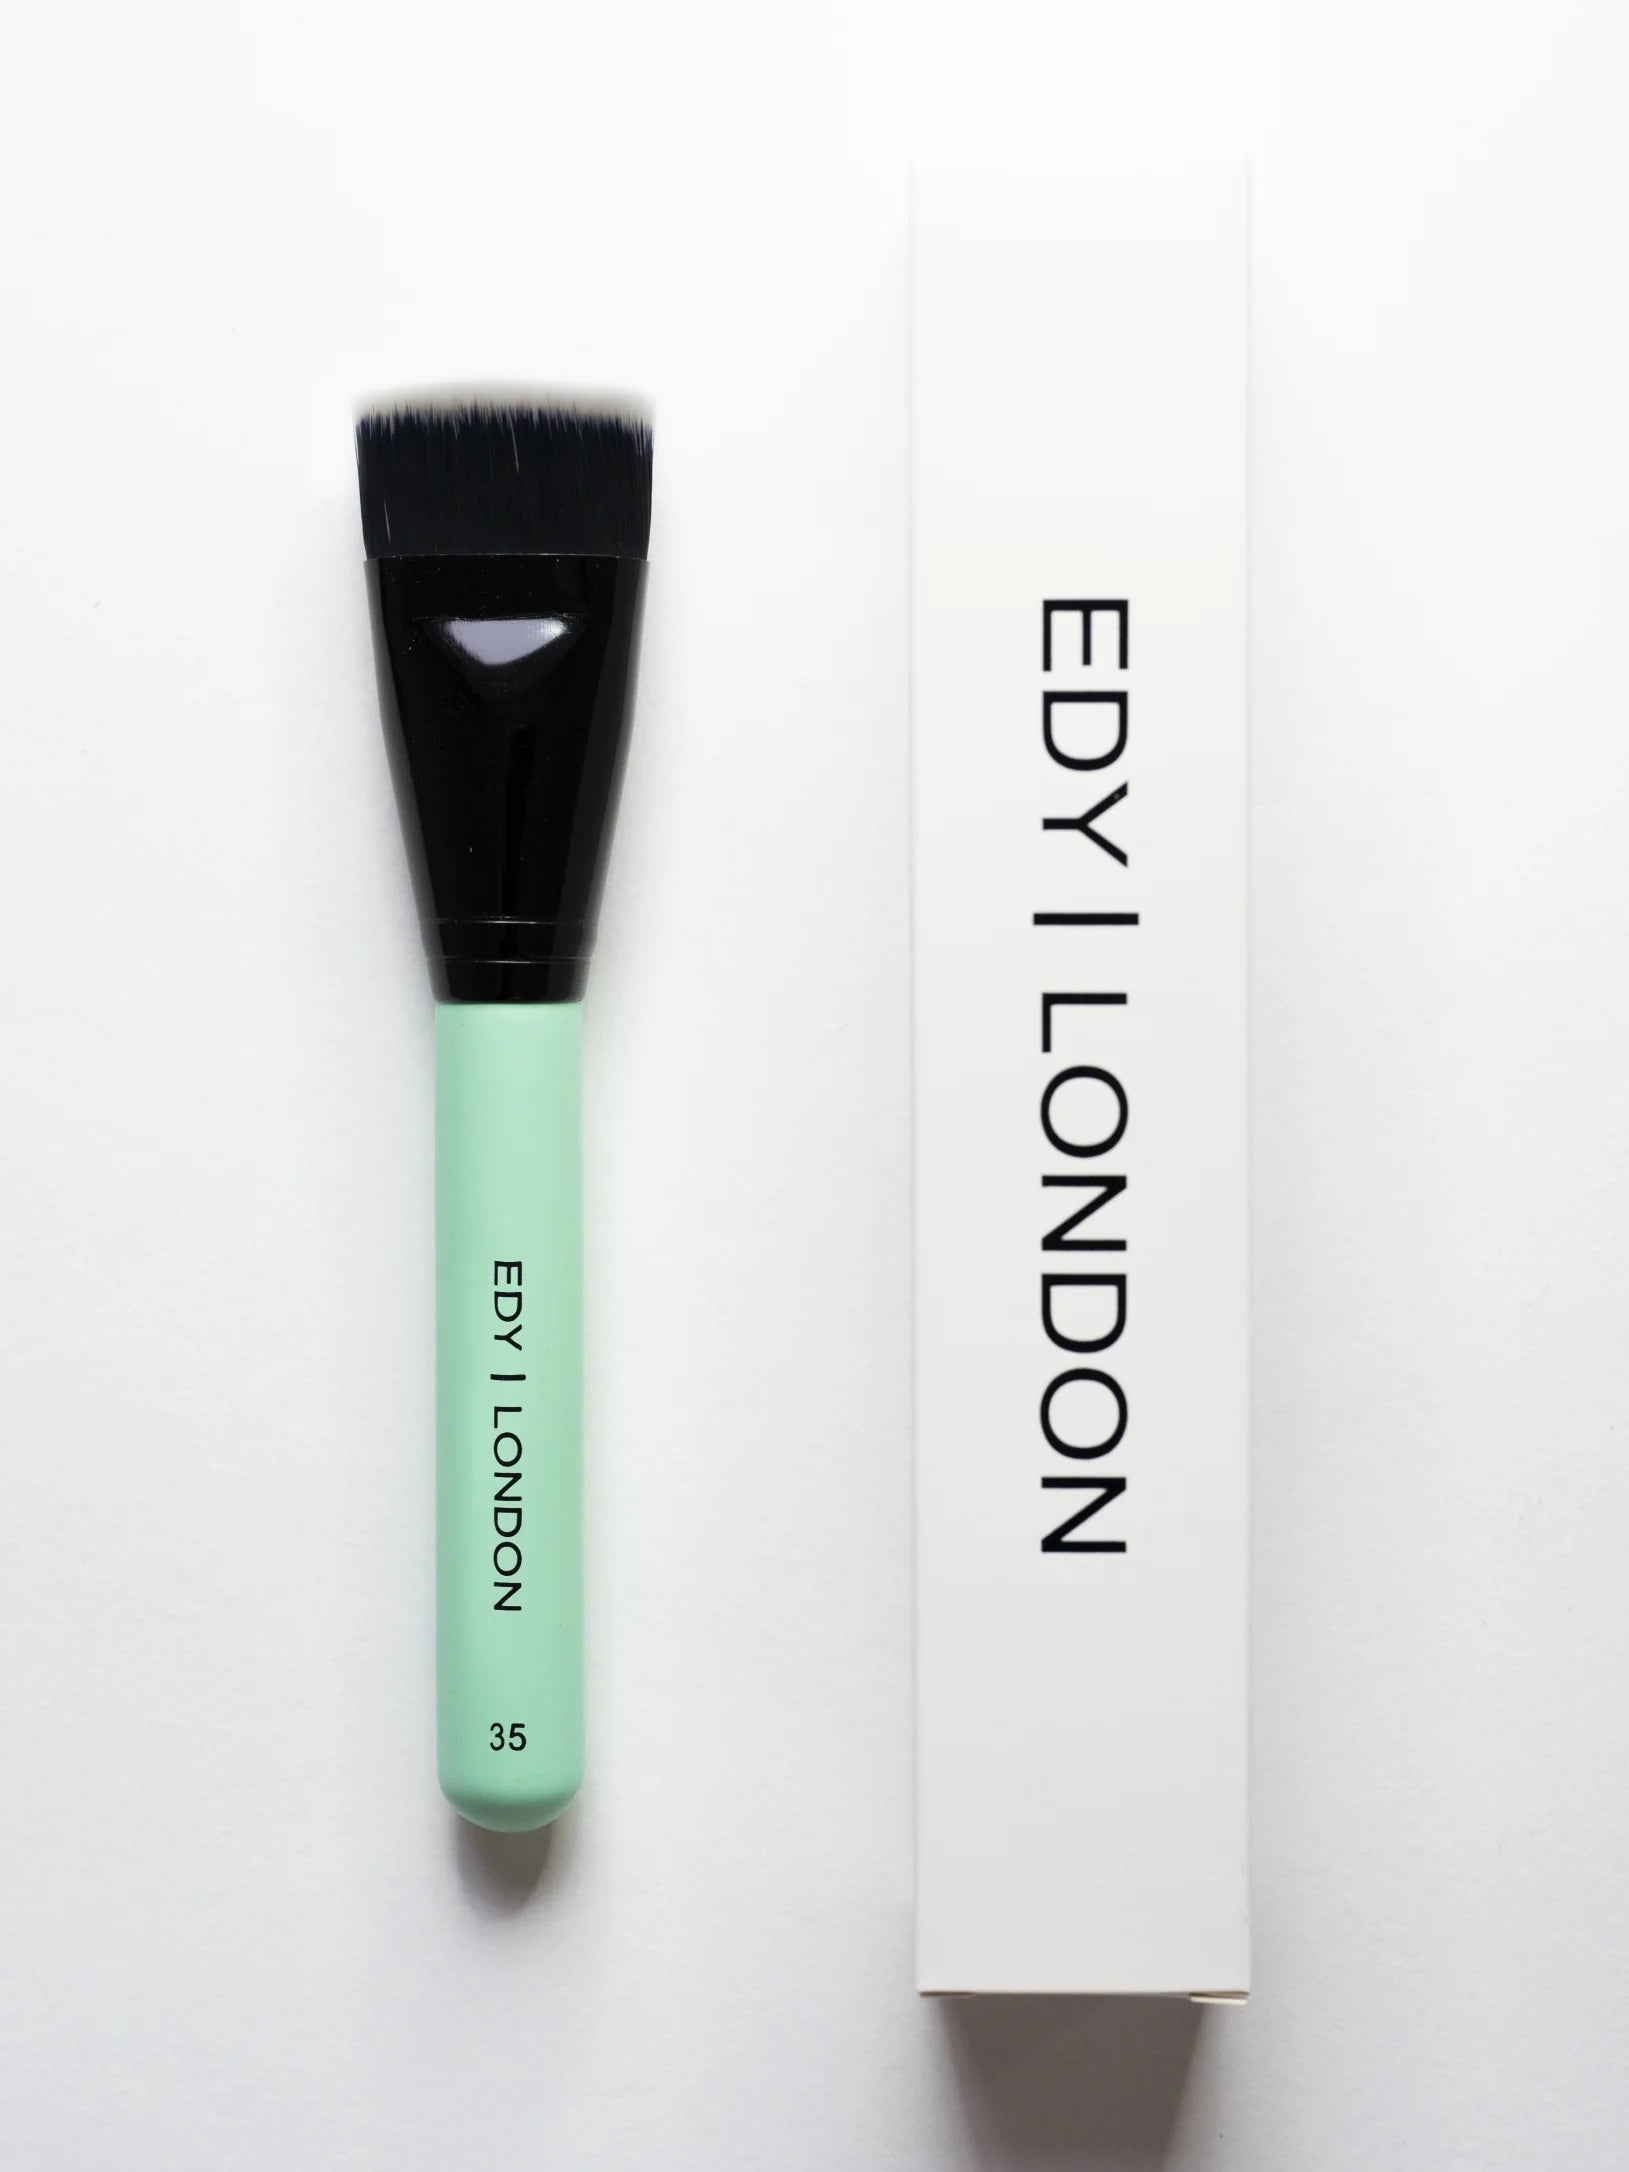 Contour Define & Blend Brush 35 Make-up Brush EDY LONDON Turquoise   [variant_option4] EDY LONDON PRODUCTS UK shop.edy.london